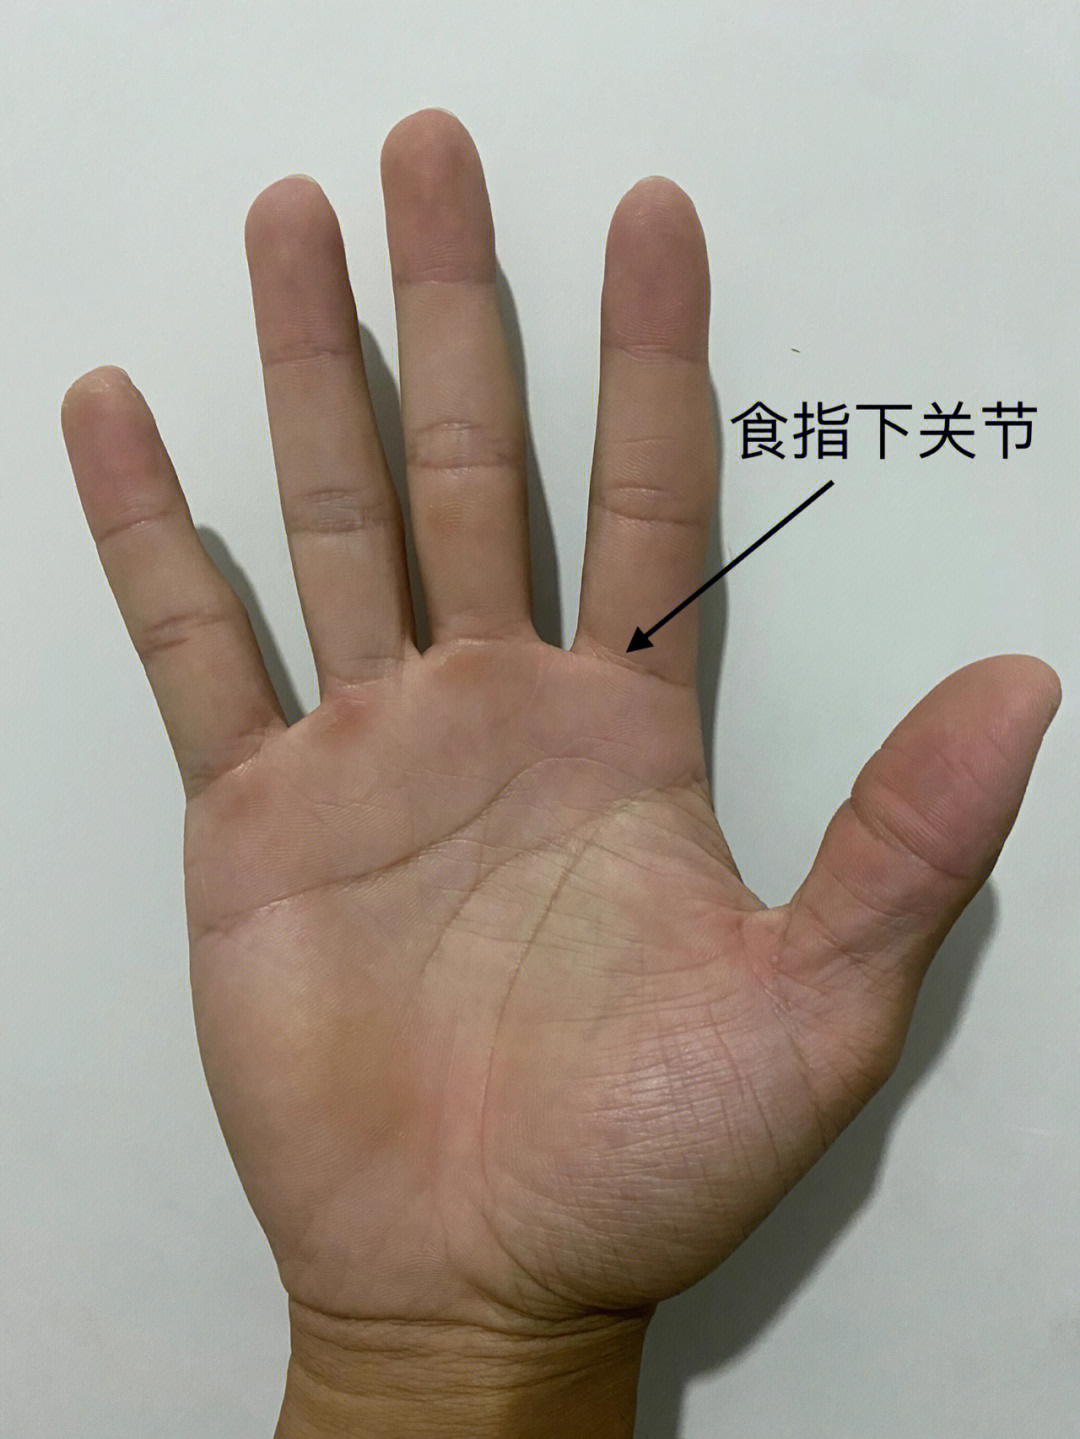 食指掌指关节位置图图片